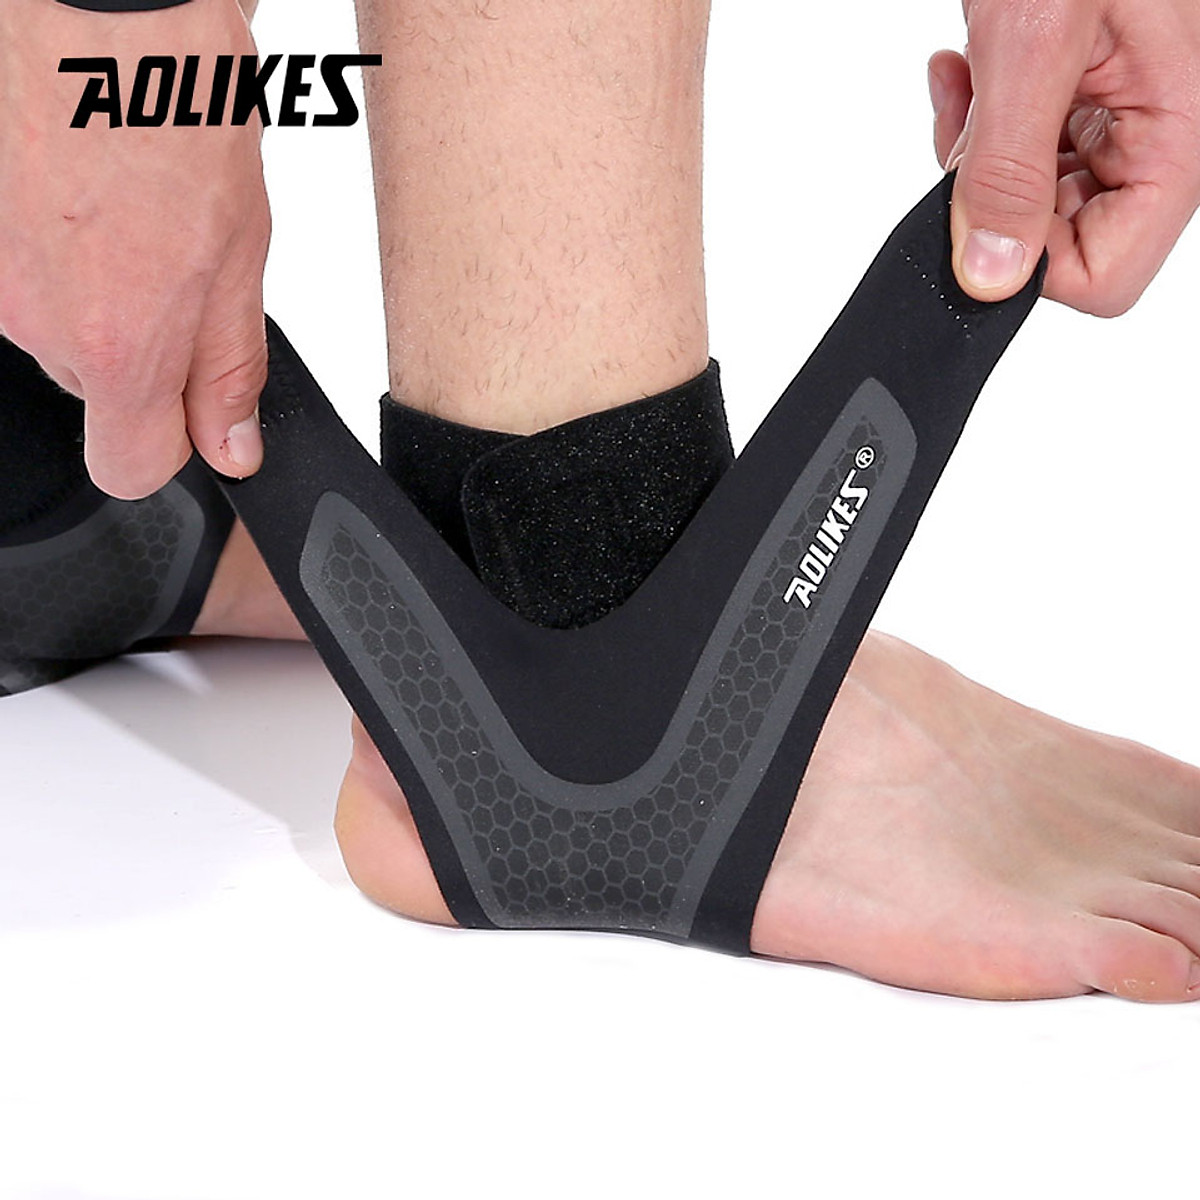 Săn Sale Băng quấn cổ chân bảo vệ mắt cá chân hỗ trợ chống lật cổ chân Sport ankle pads AOLIKES YE-7130 -Hàng Chính Hãng